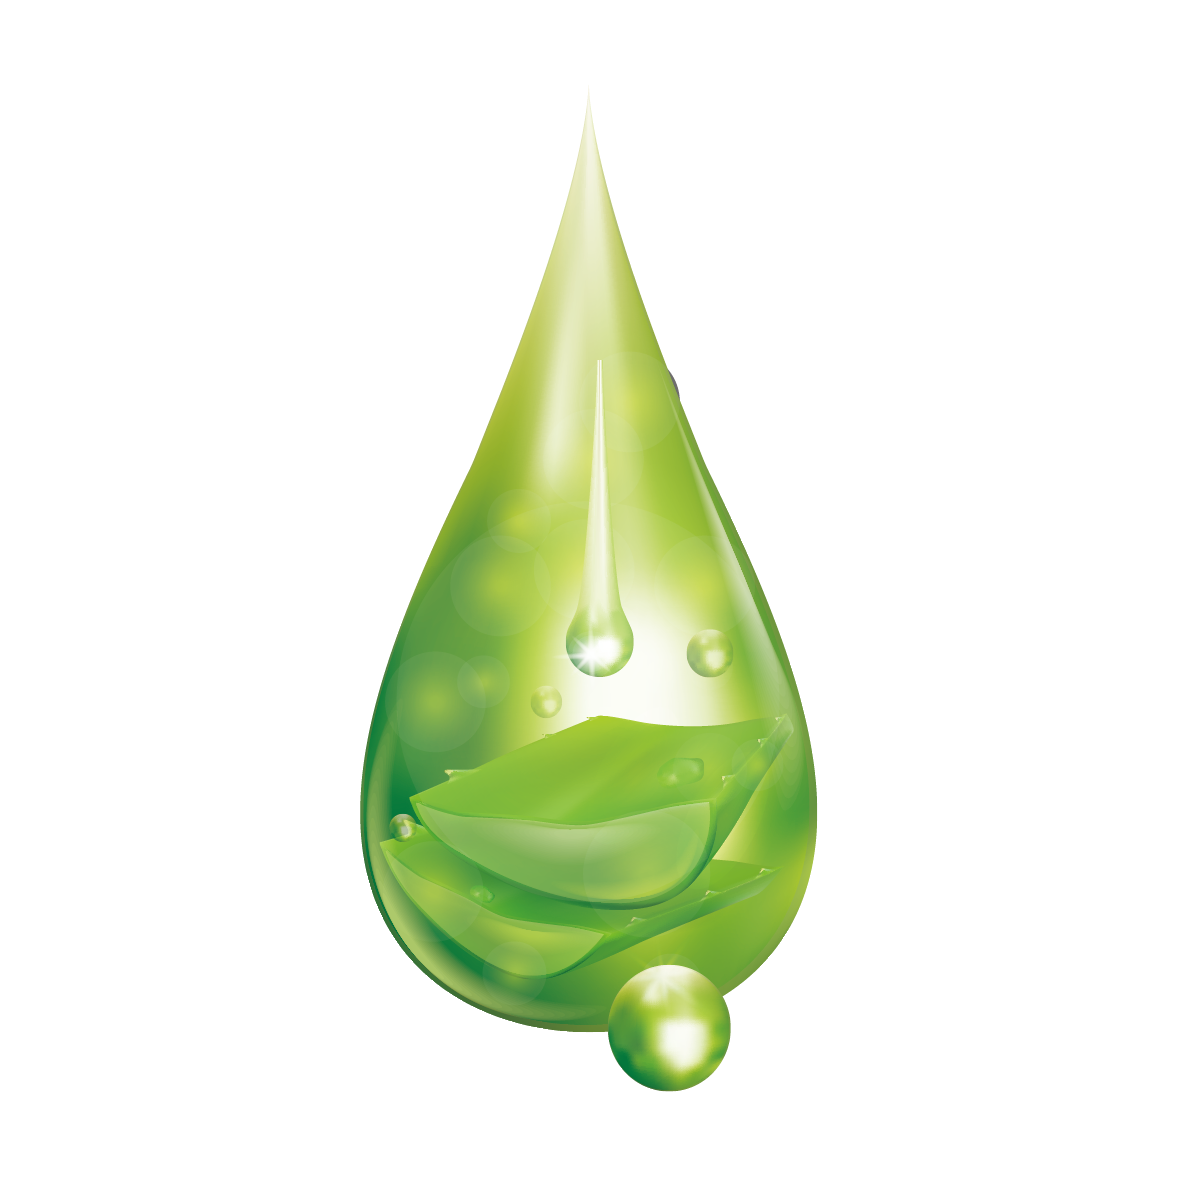 Download PNG image - Leaf Water Dew Drop PNG Transparent Image 